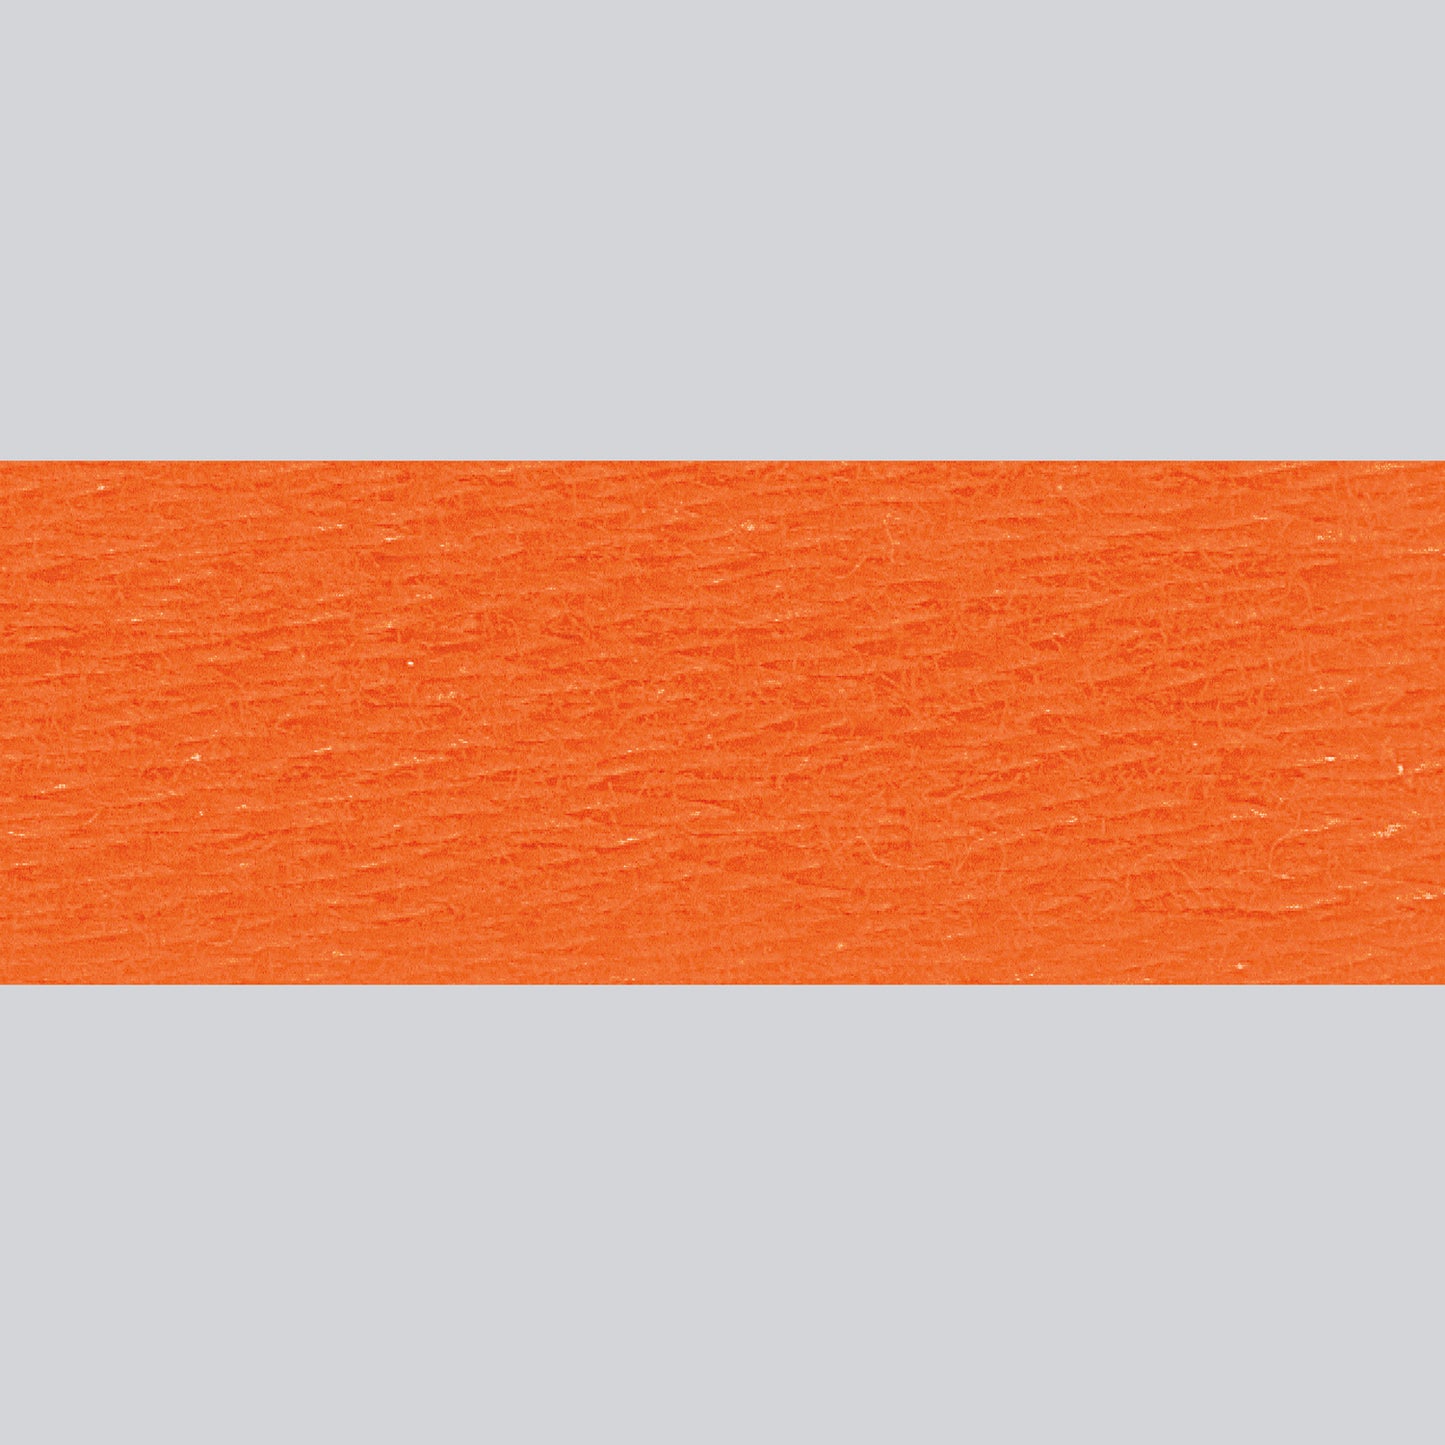 DMC Embroidery Floss - 720 Dark Orange Spice Alternative View #1